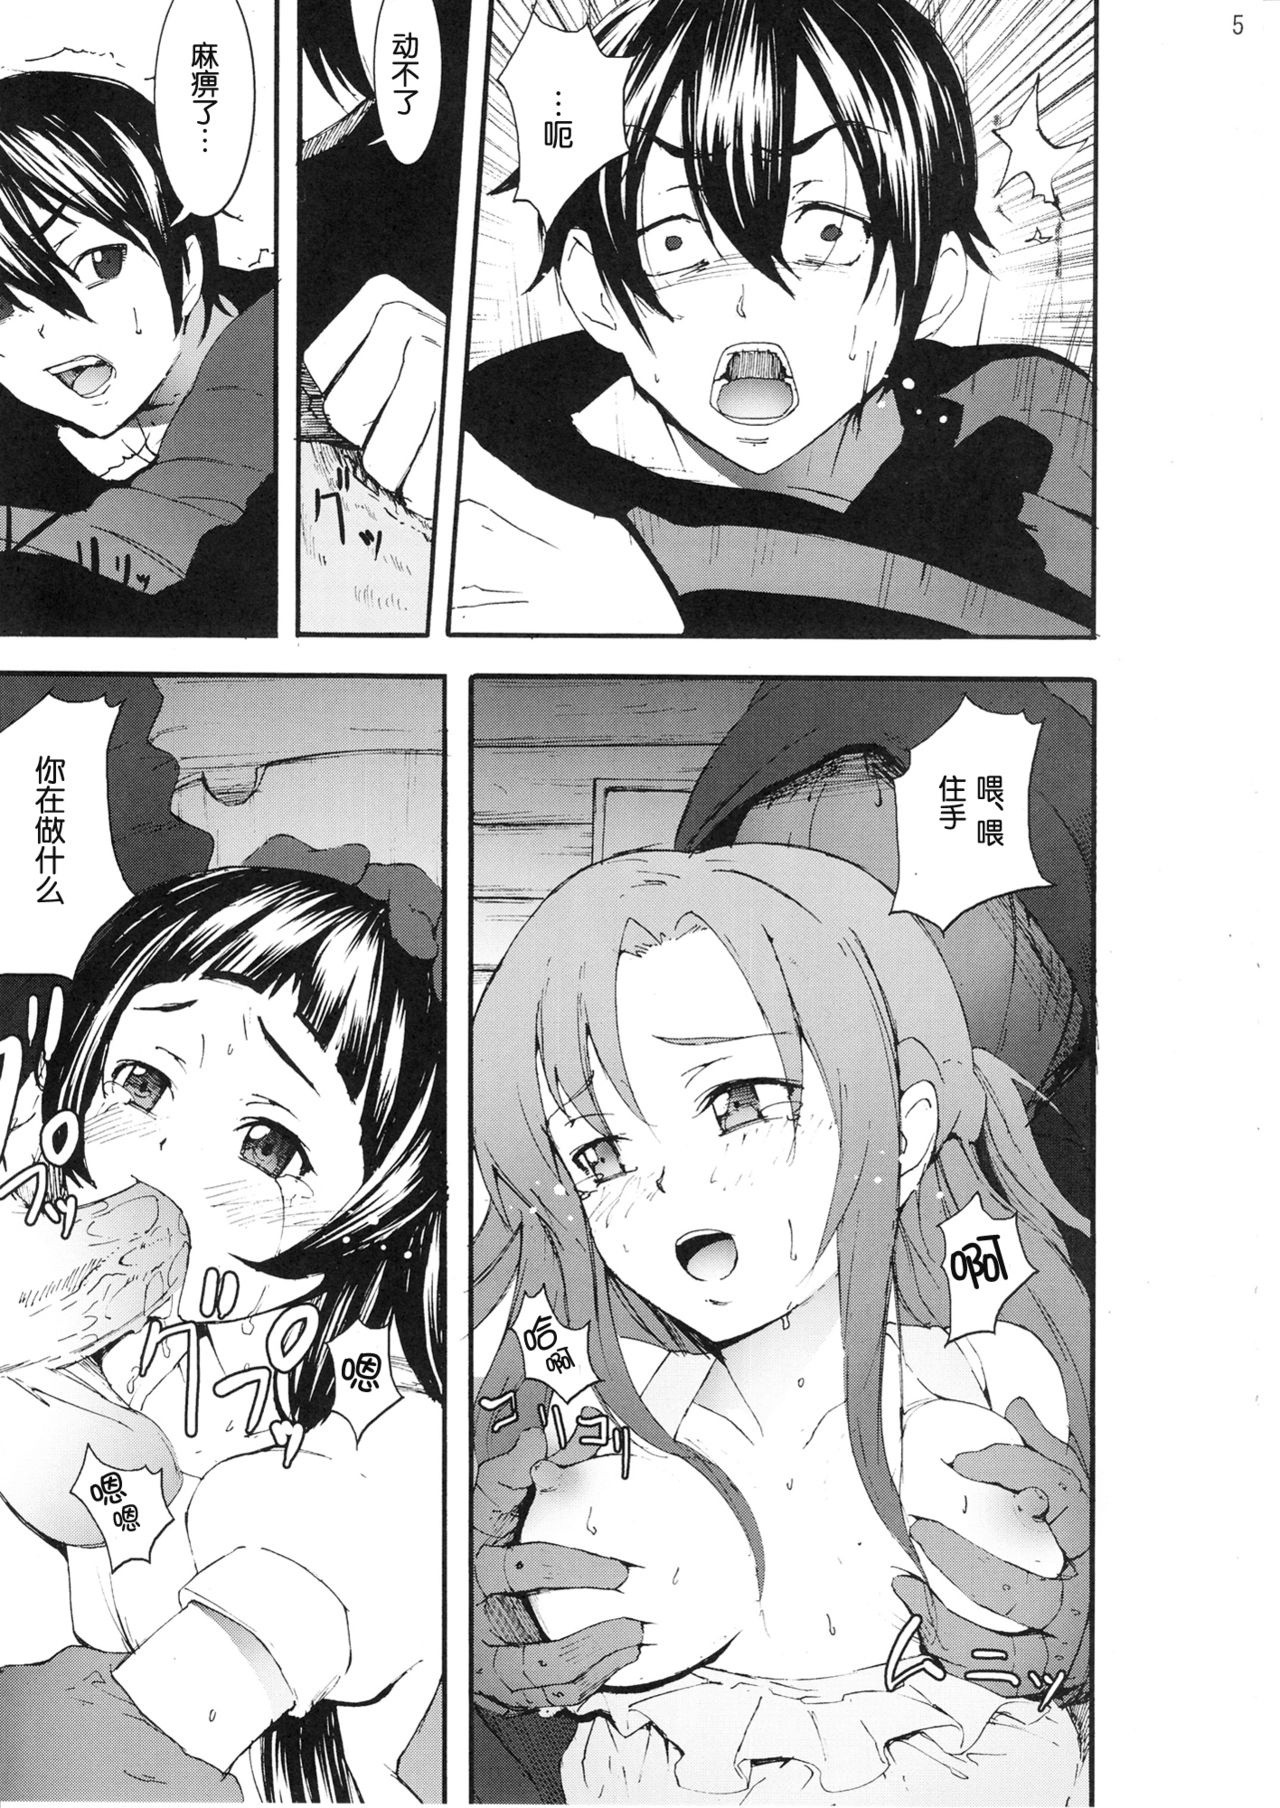 Asuna to Yui no Jigoku Rape hentai manga picture 3